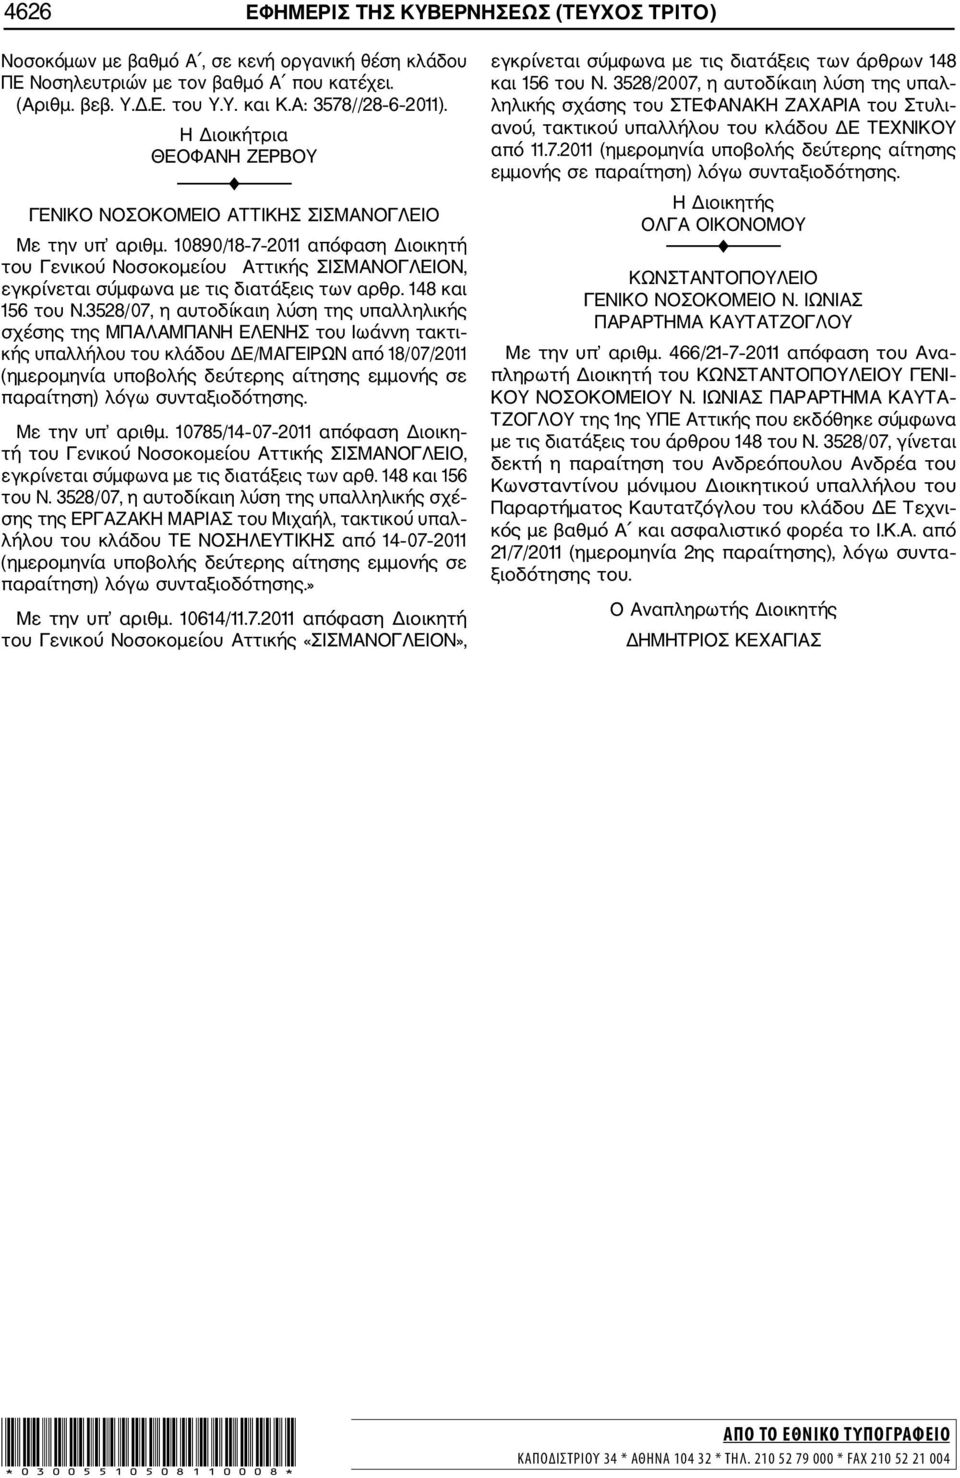 10890/18 7 2011 απόφαση Διοικητή του Γενικού Νοσοκομείου Αττικής ΣΙΣΜΑΝΟΓΛΕΙΟΝ, εγκρίνεται σύμφωνα με τις διατάξεις των αρθρ. 148 και 156 του Ν.